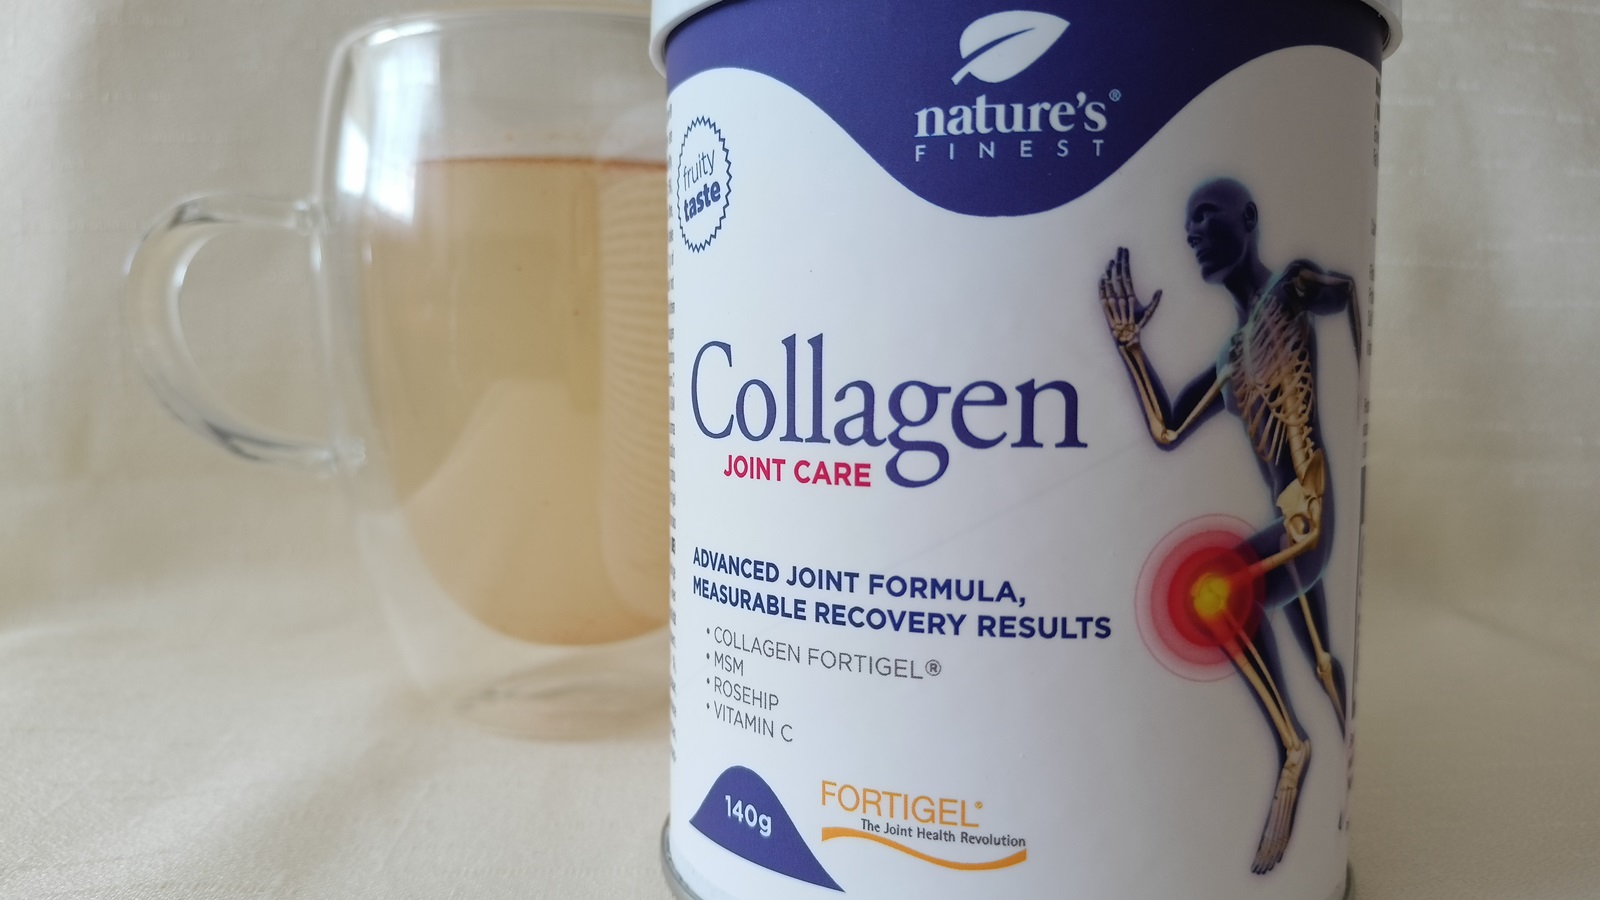 Recenzia: Vyskúšali sme Collagen Joint Care od Nature’s Finest